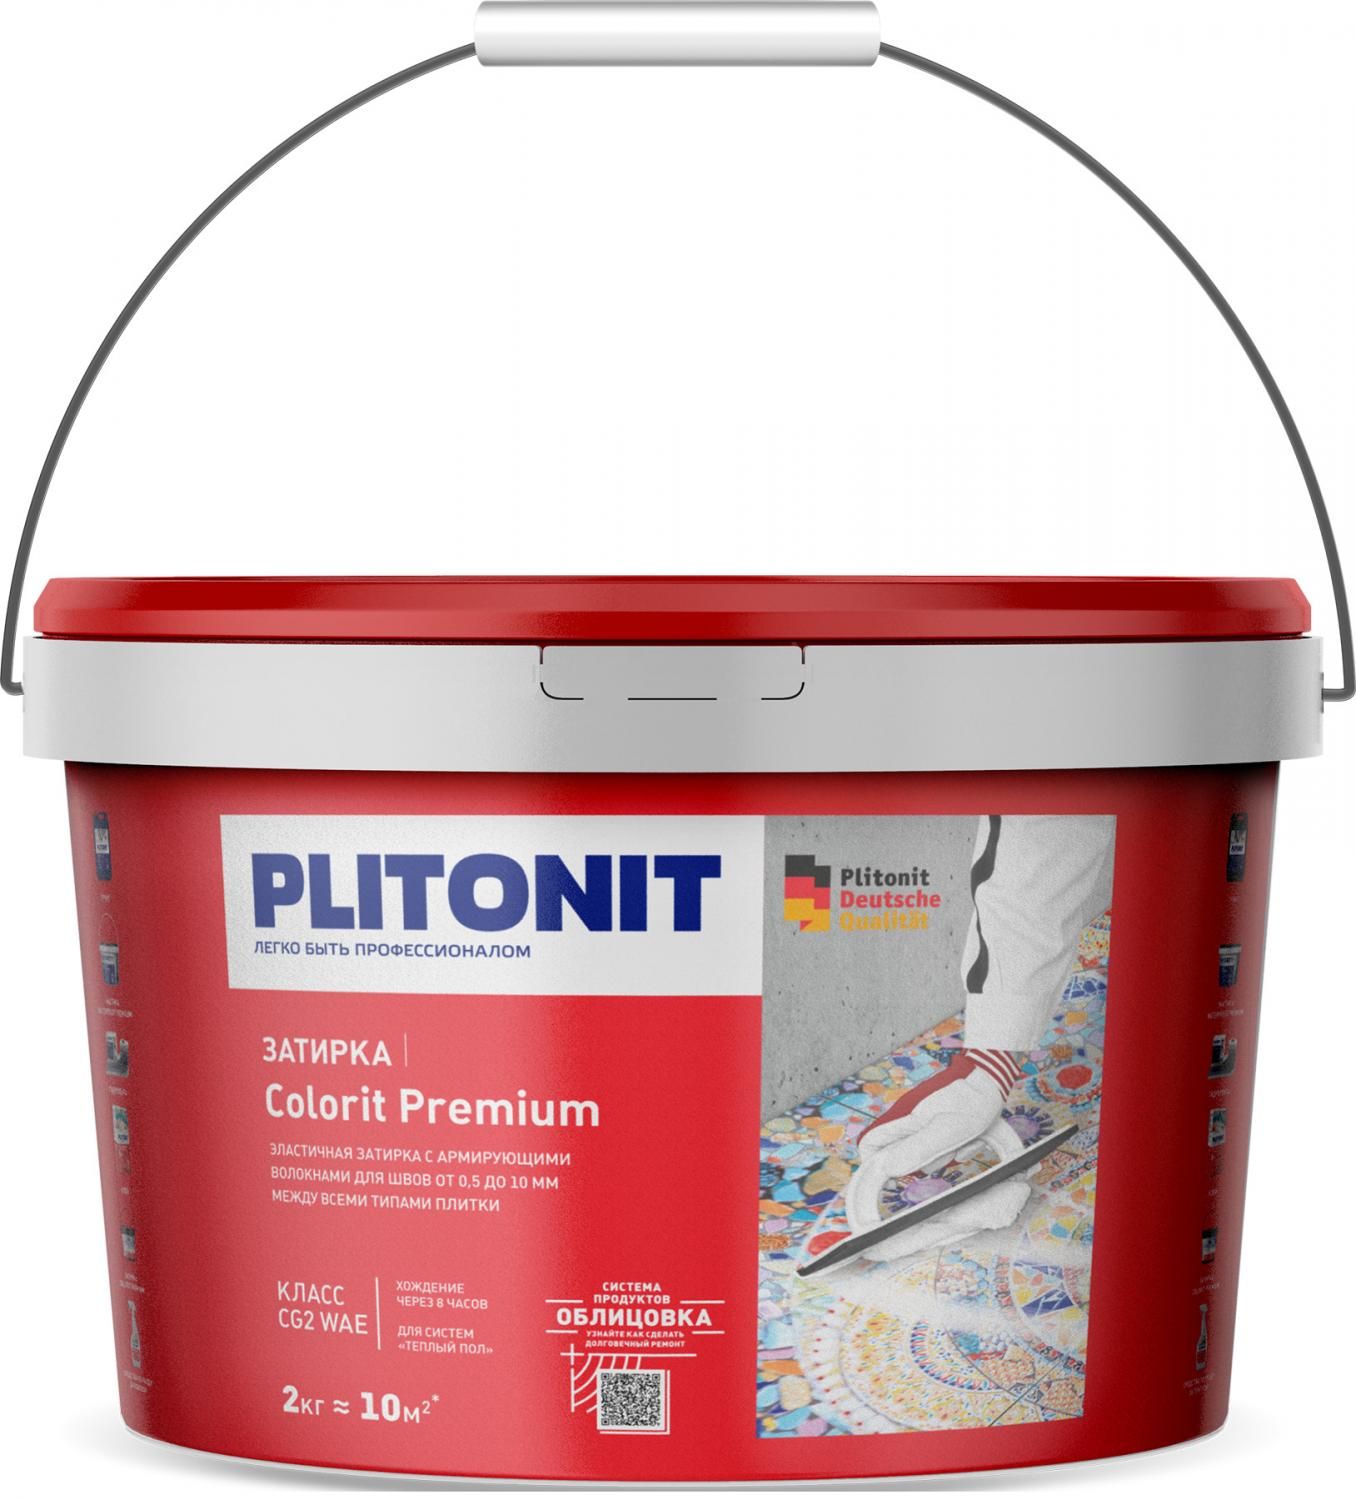 Купить Затирка Plitonit Colorit Premium белая 2 кг цементная